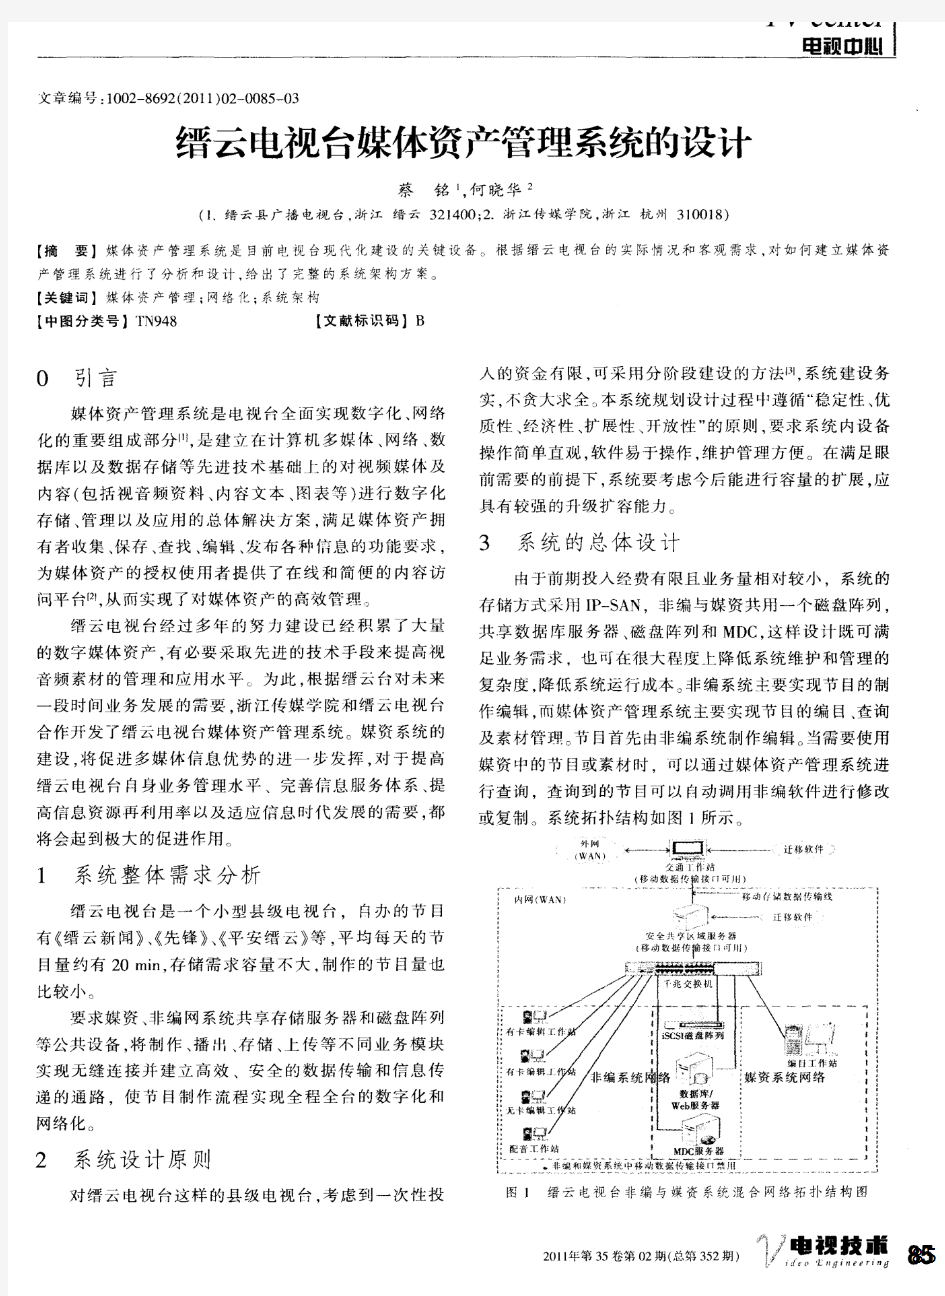 缙云电视台媒体资产管理系统的设计